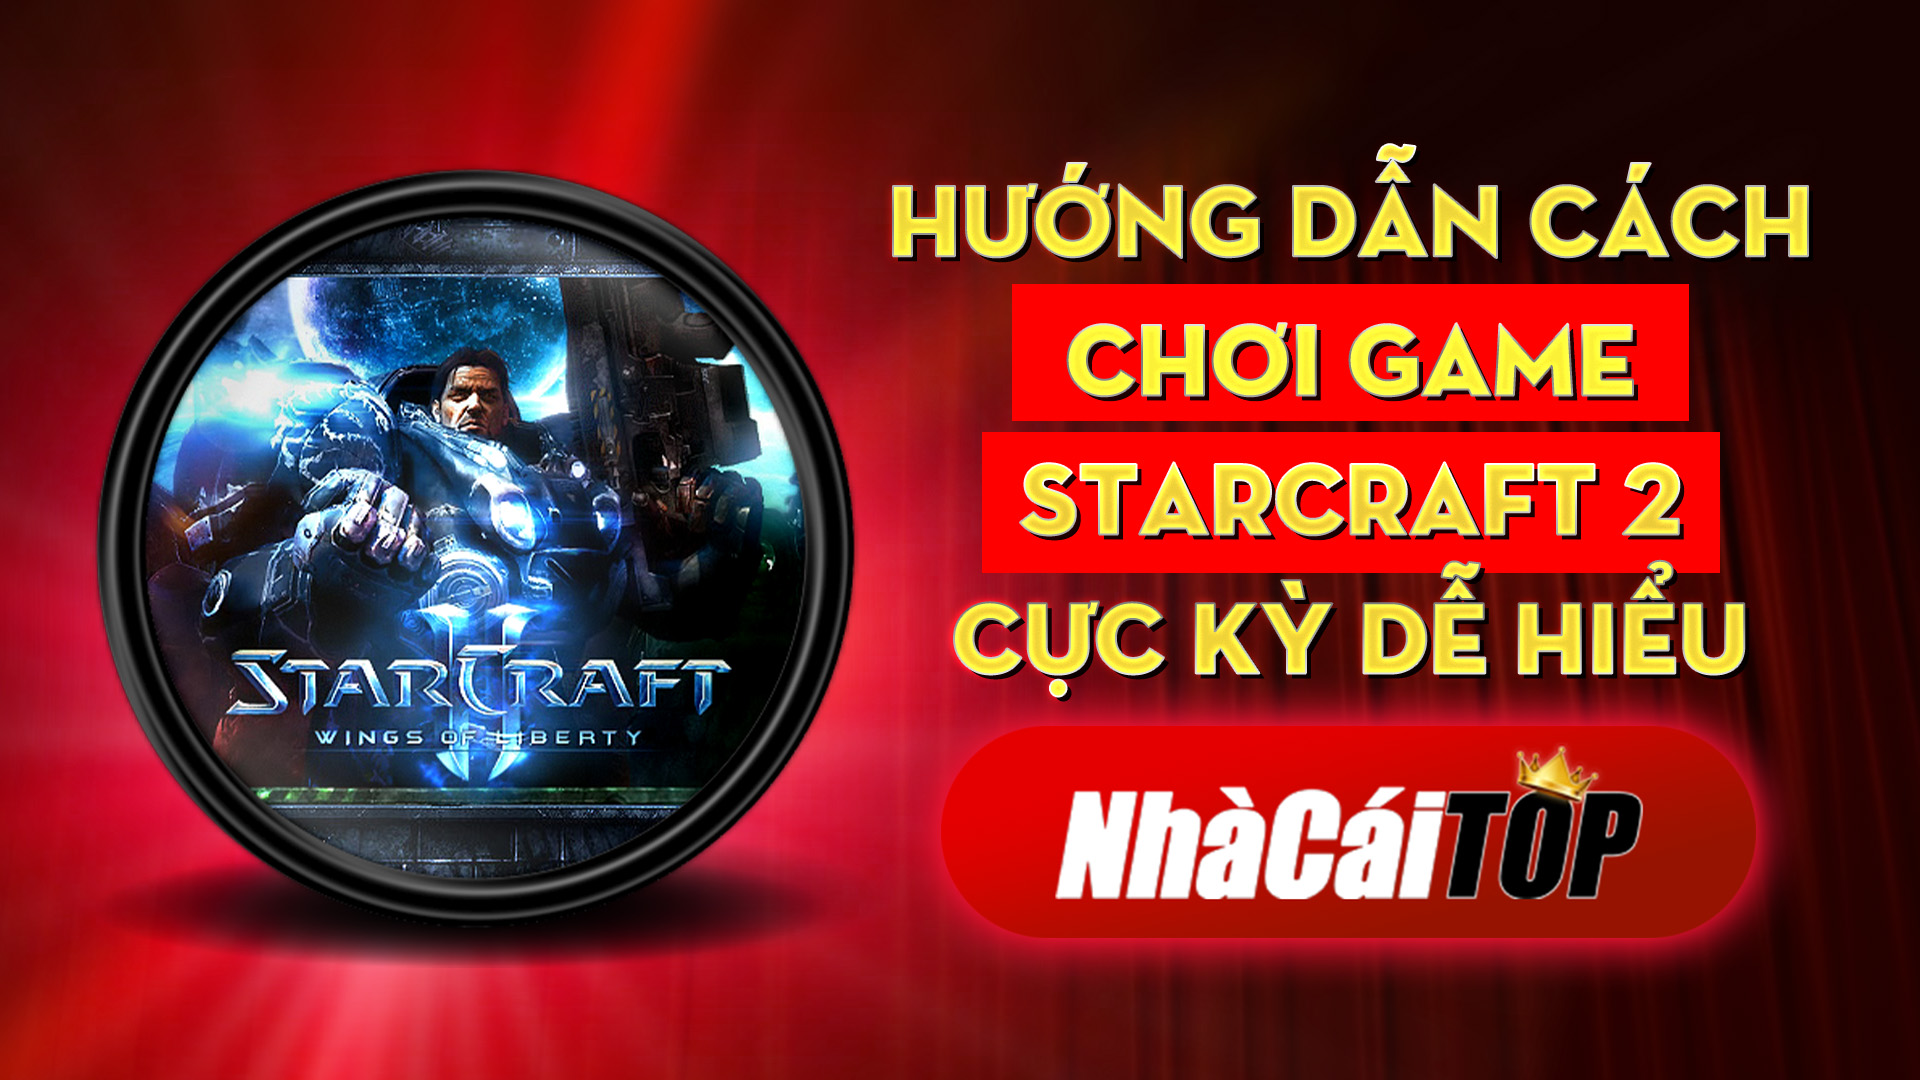 353 Huong Dan Cach Choi Game Starcraft 2 Cuc Ky De Hieu